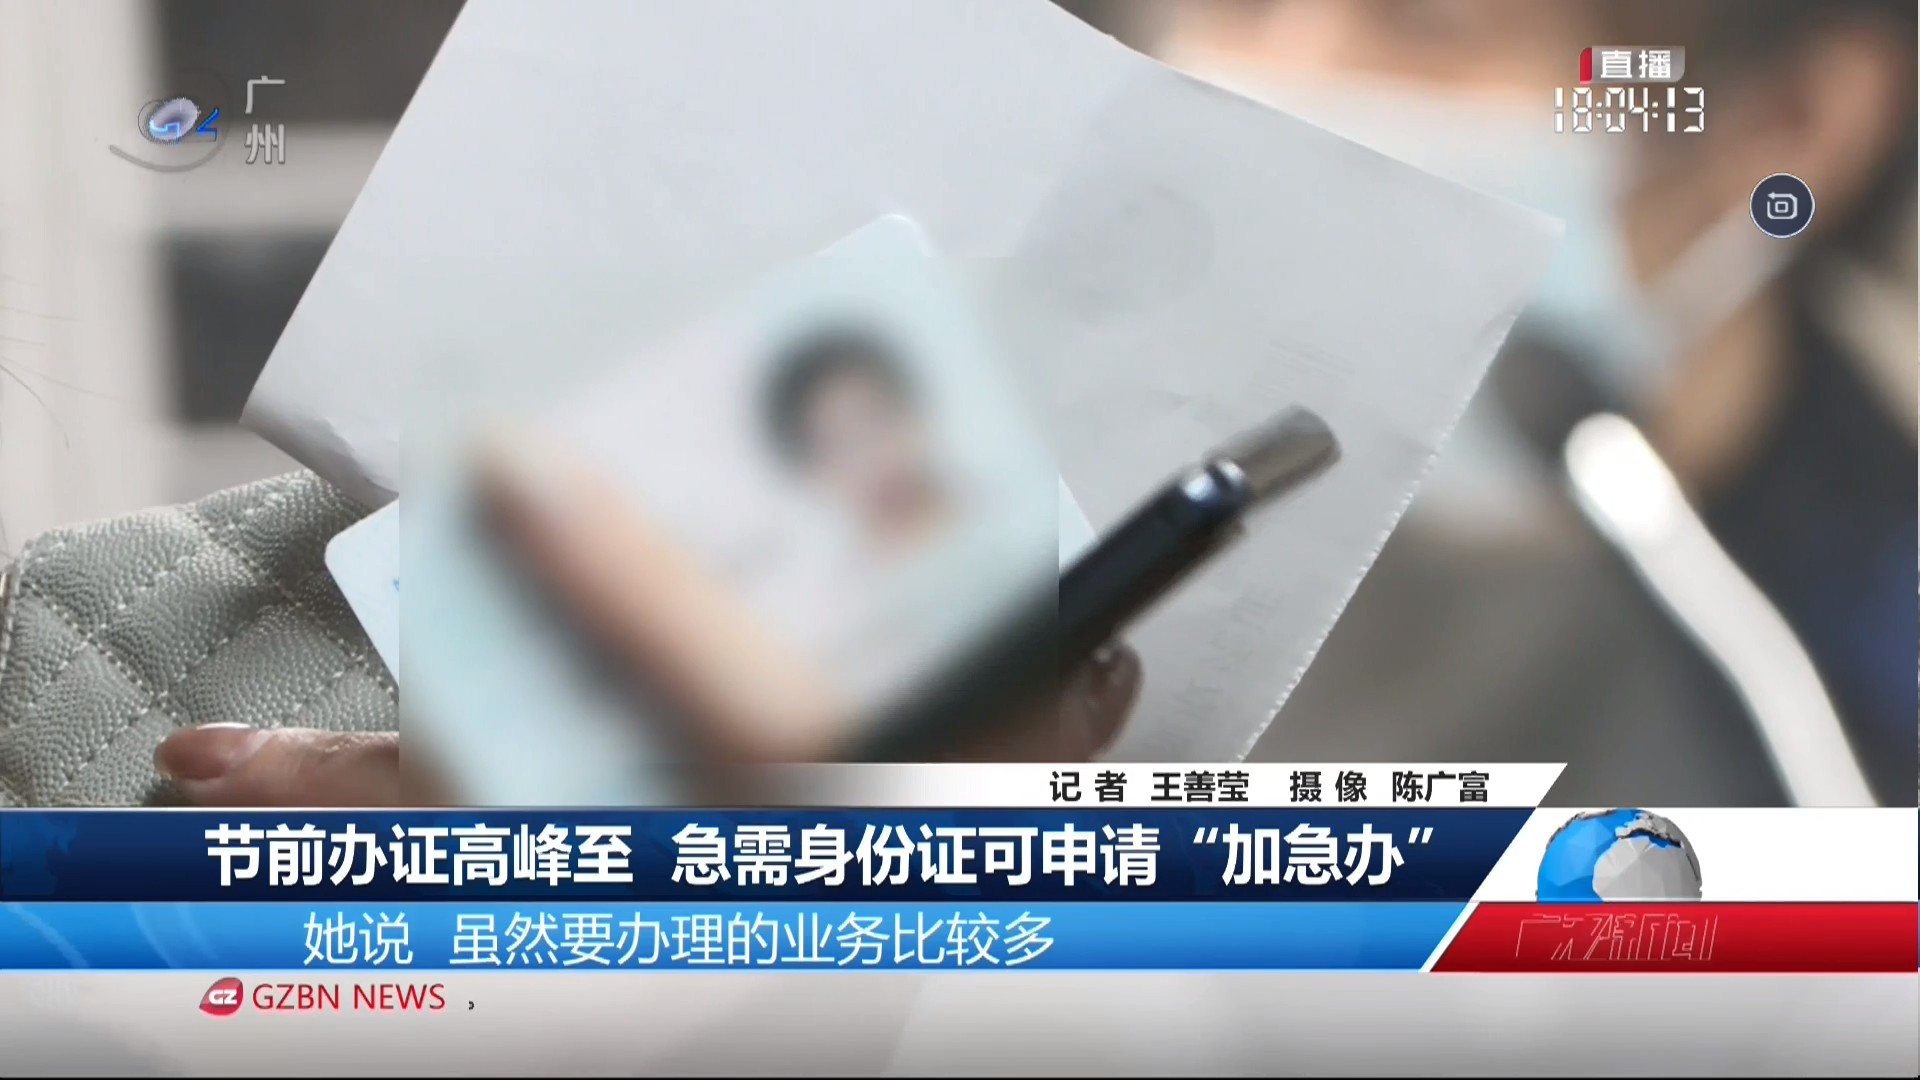 广州台综合频道 广视新闻 节前办证高峰至 急需身份证可申请“加急办”